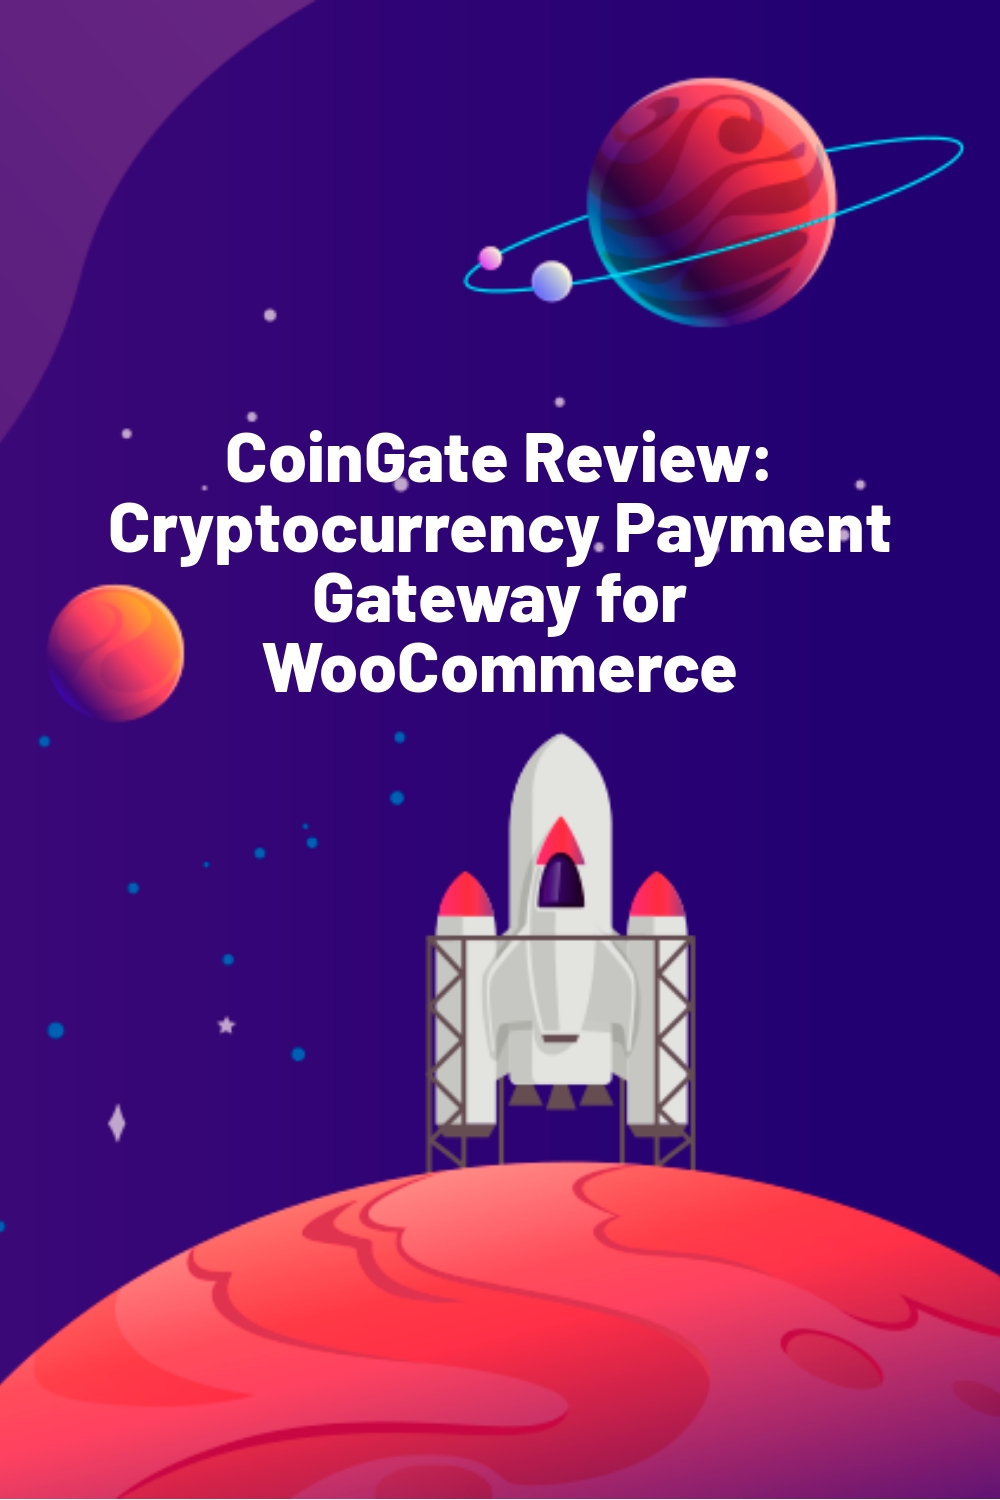 Revue de CoinGate : Passerelle de paiement en crypto-monnaies pour WooCommerce